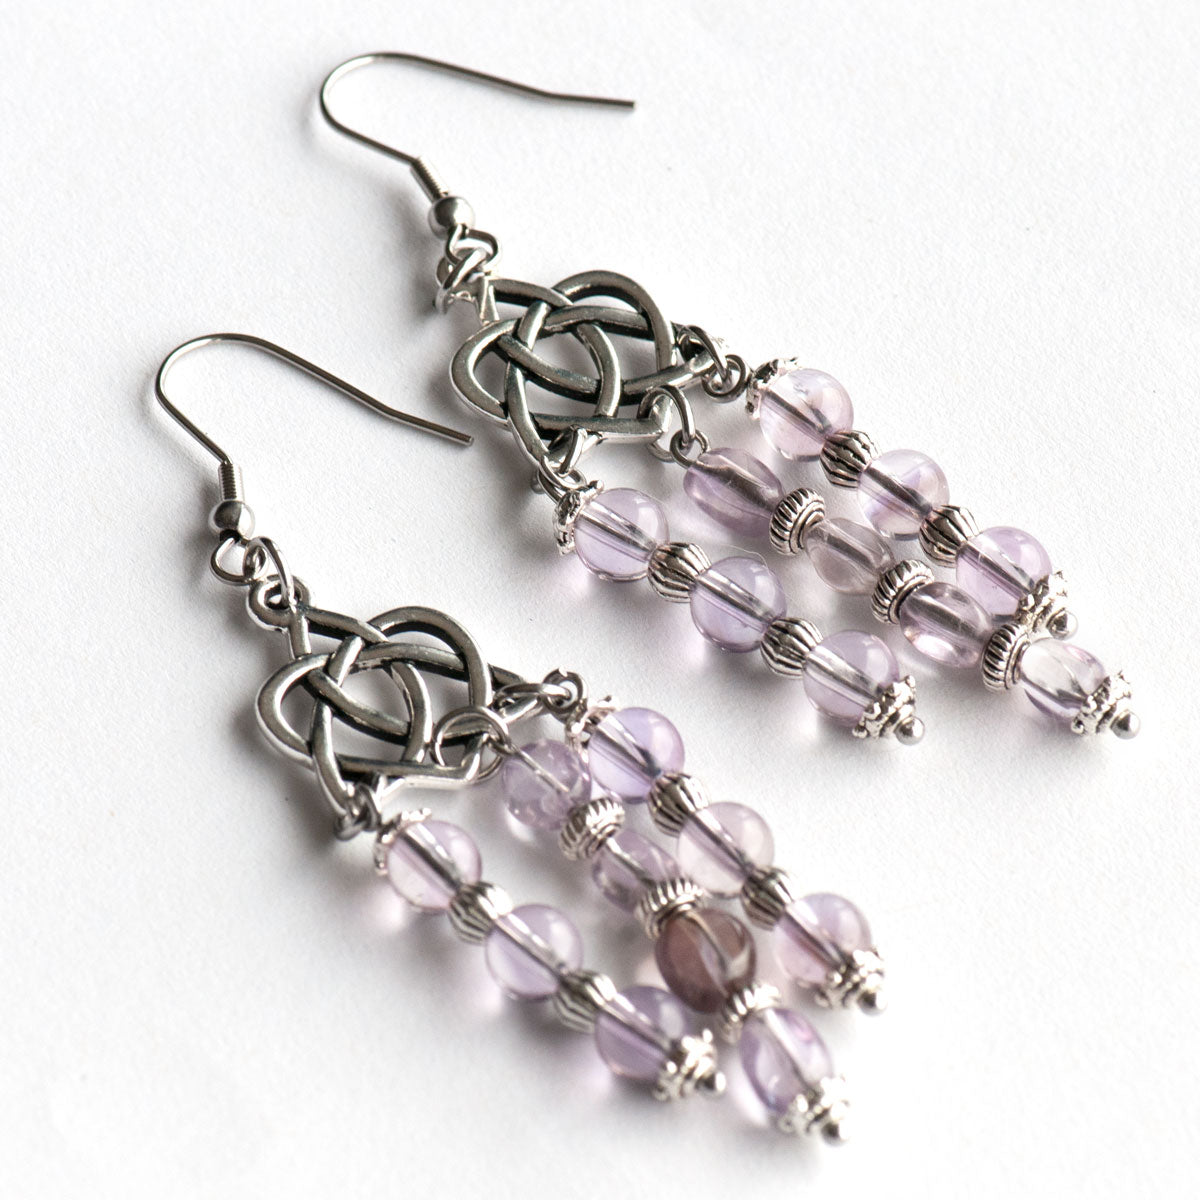 Handmade amethyst chandelier earrings